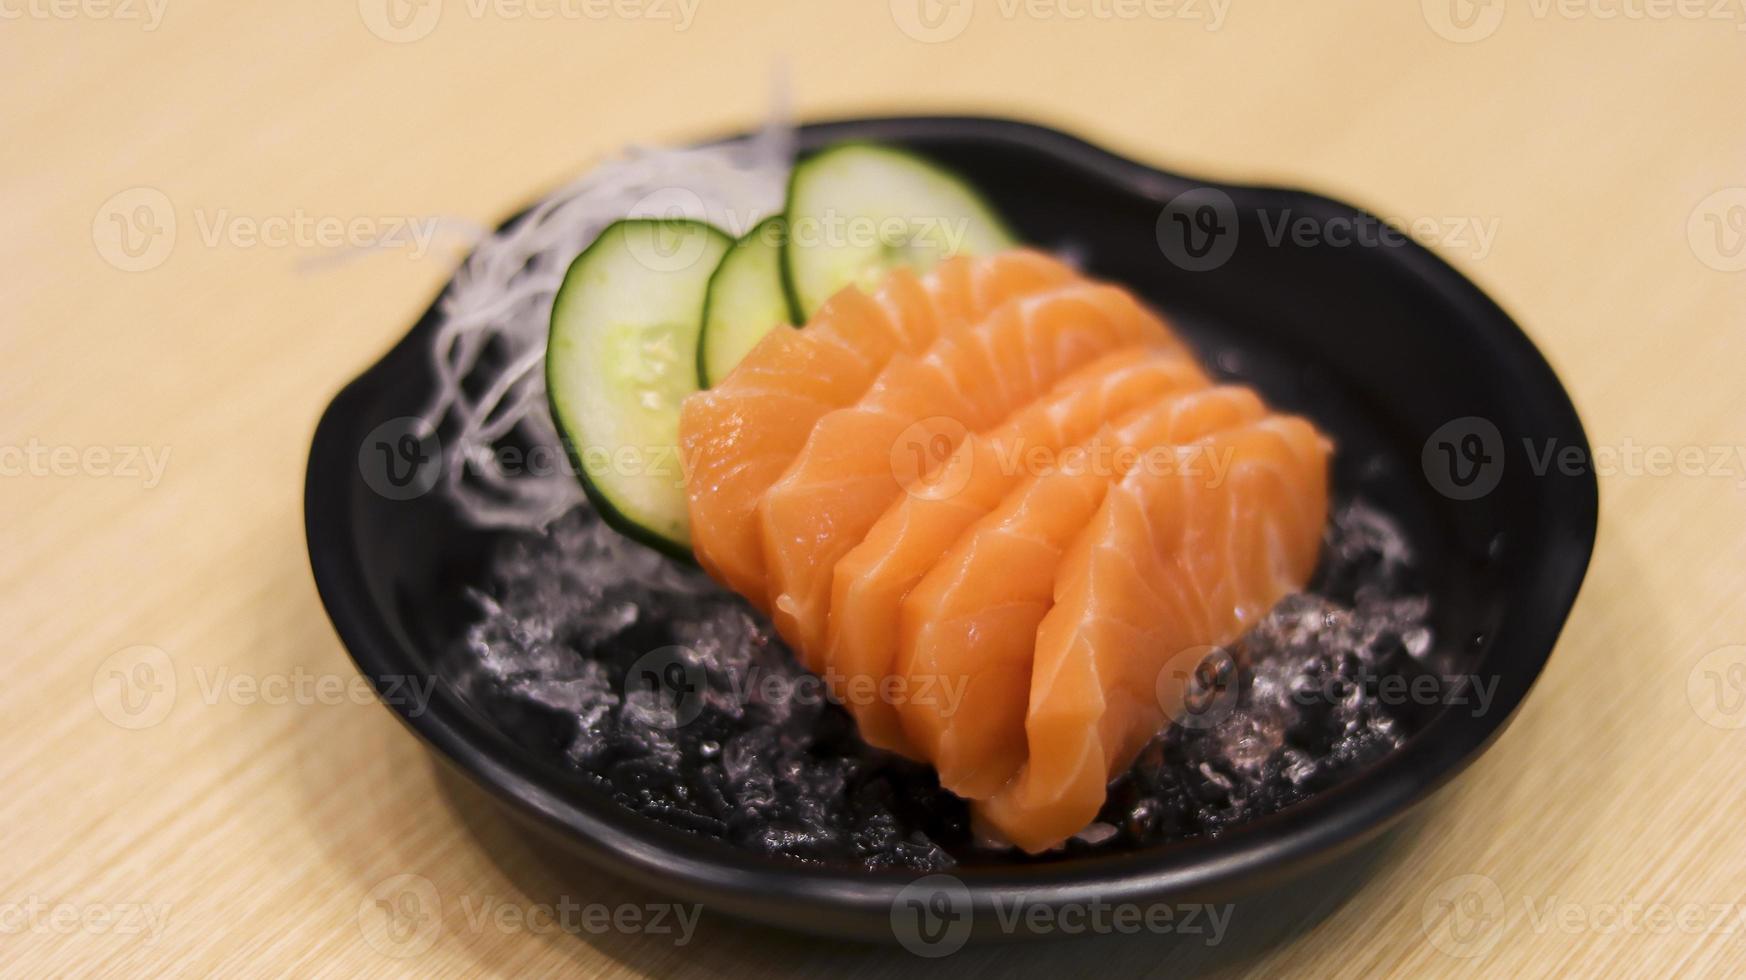 pescado de salmón crudo en rodajas o filete de salmón o sashimi de salmón como restaurante de comida japonesa. menú de restaurante de sushi japonés de comida asiática. foto